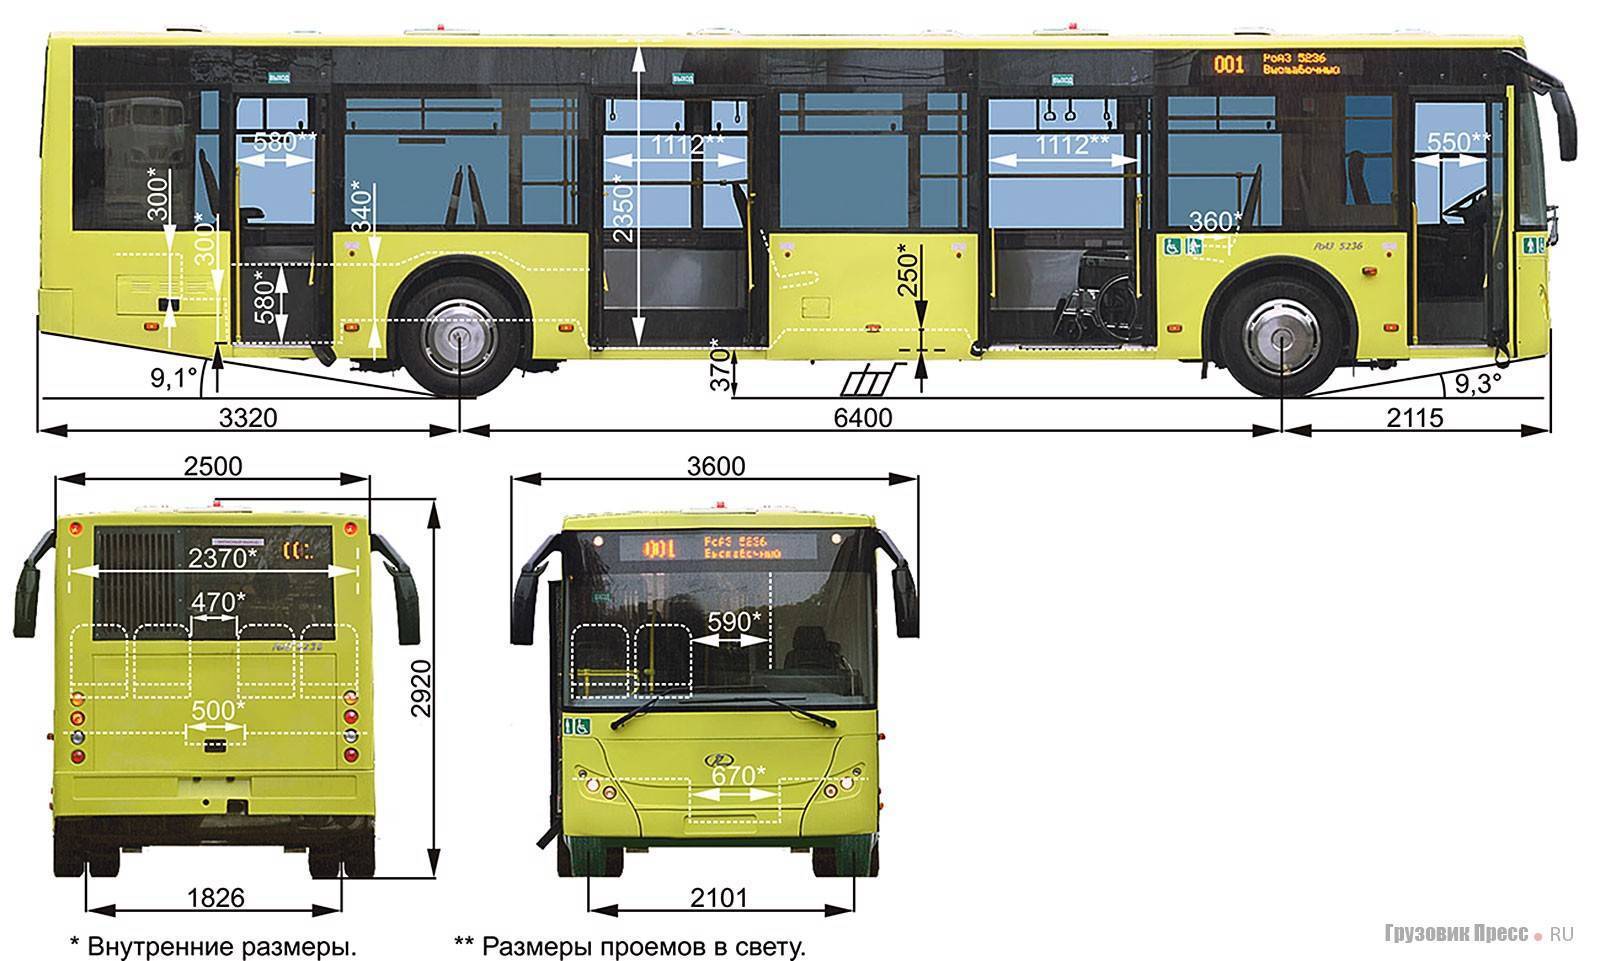 Автобус длиной 15 метров. Автобус МАЗ 103 габариты. МАЗ 206 габариты. Автобус МАЗ 206 габариты. МАЗ 206/203.